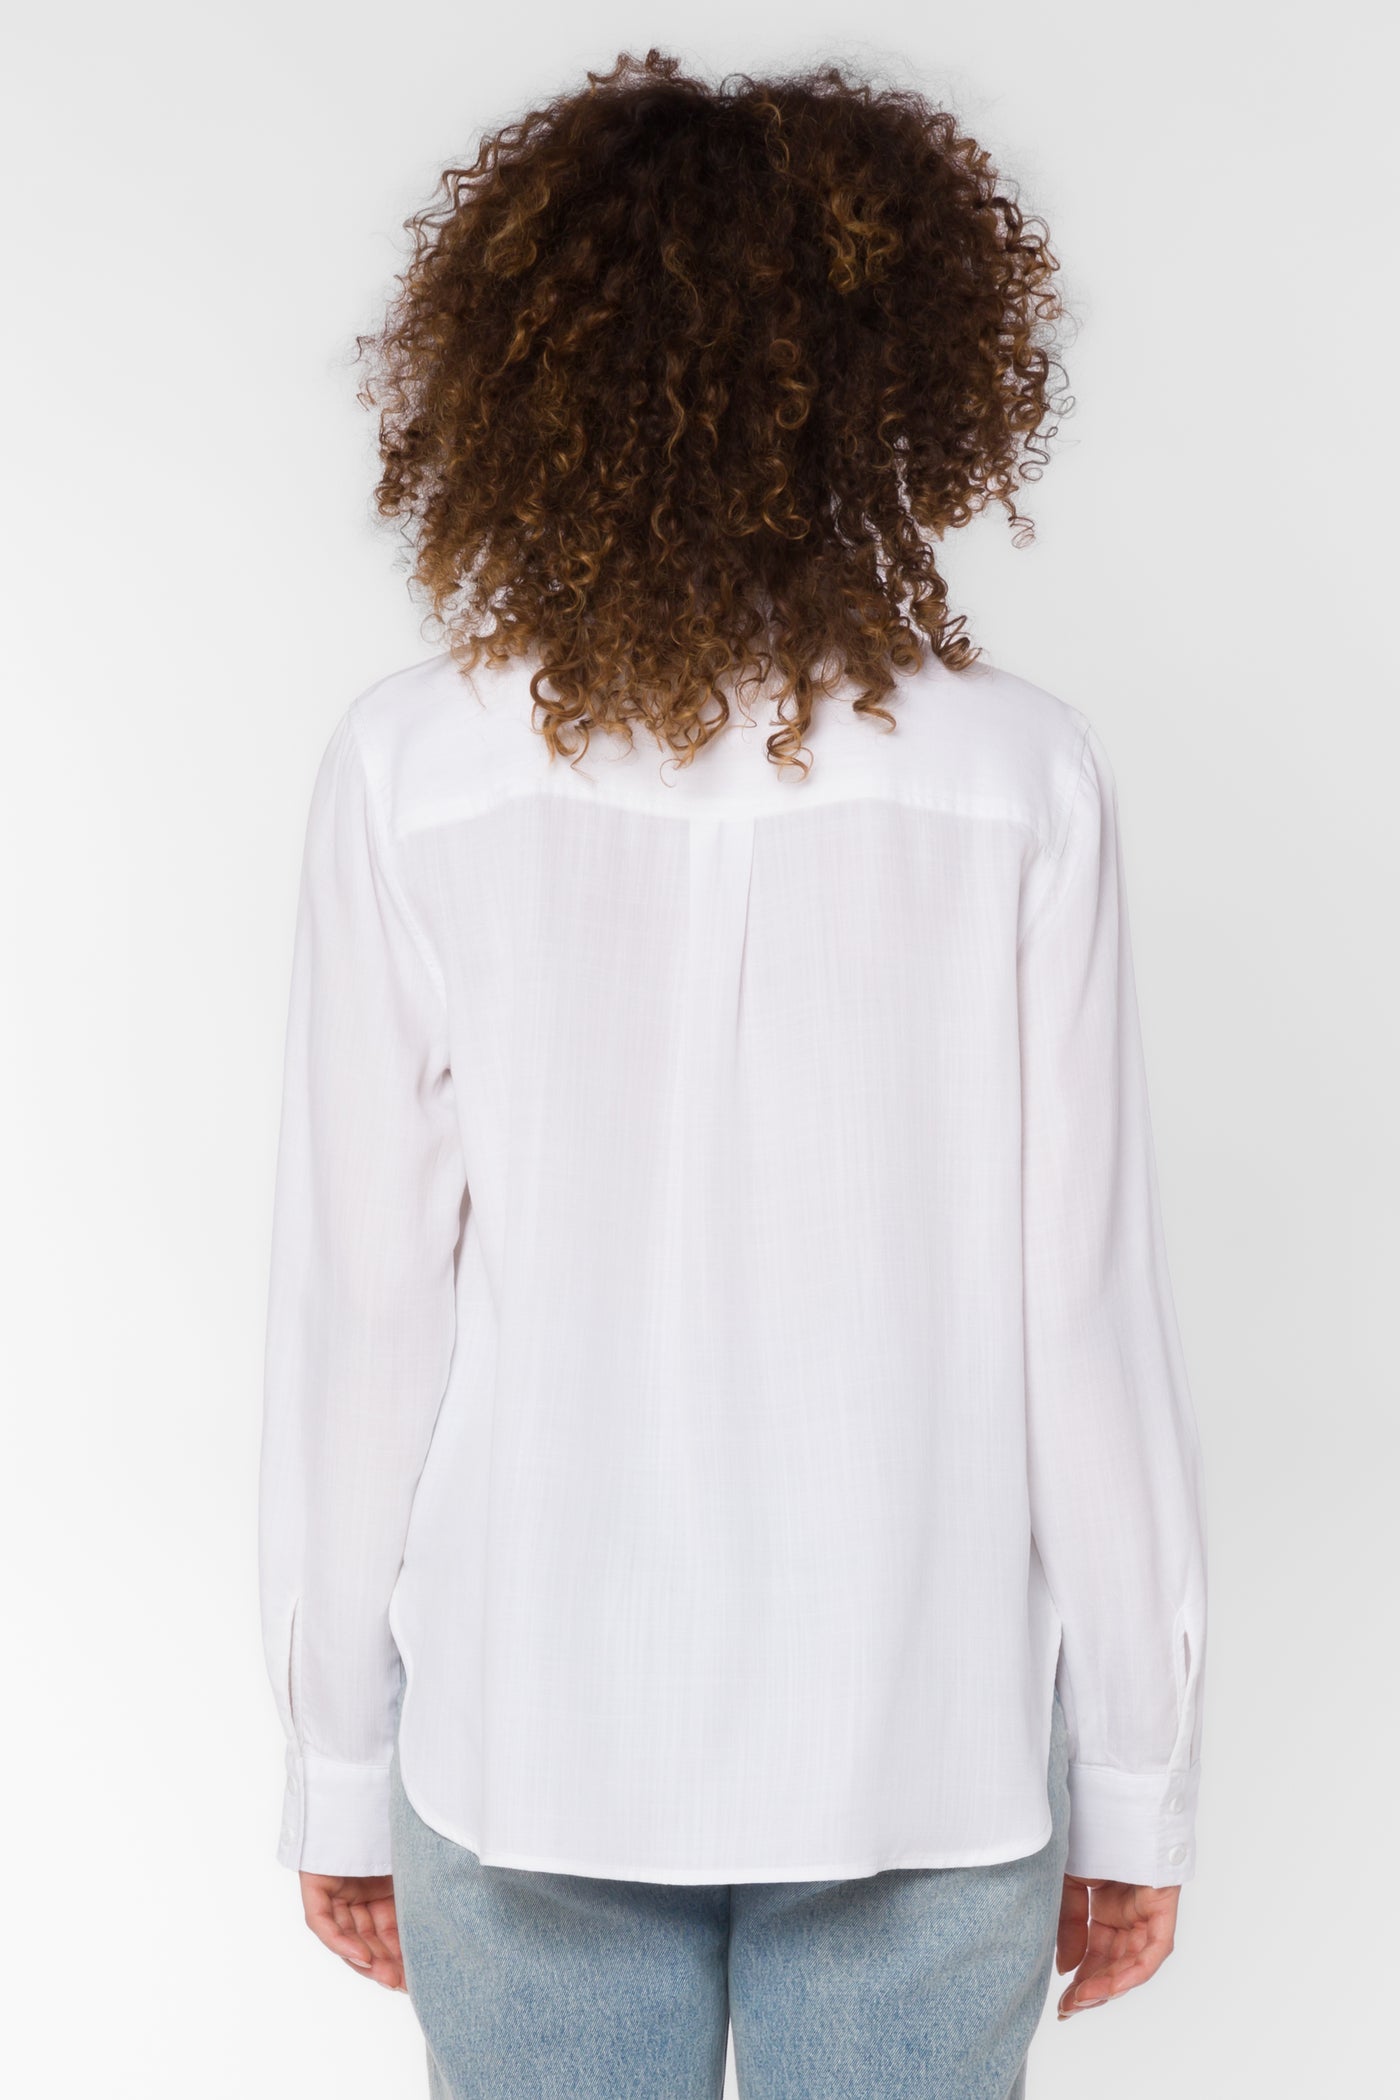 Leah Optic White Blouse - Tops - Velvet Heart Clothing